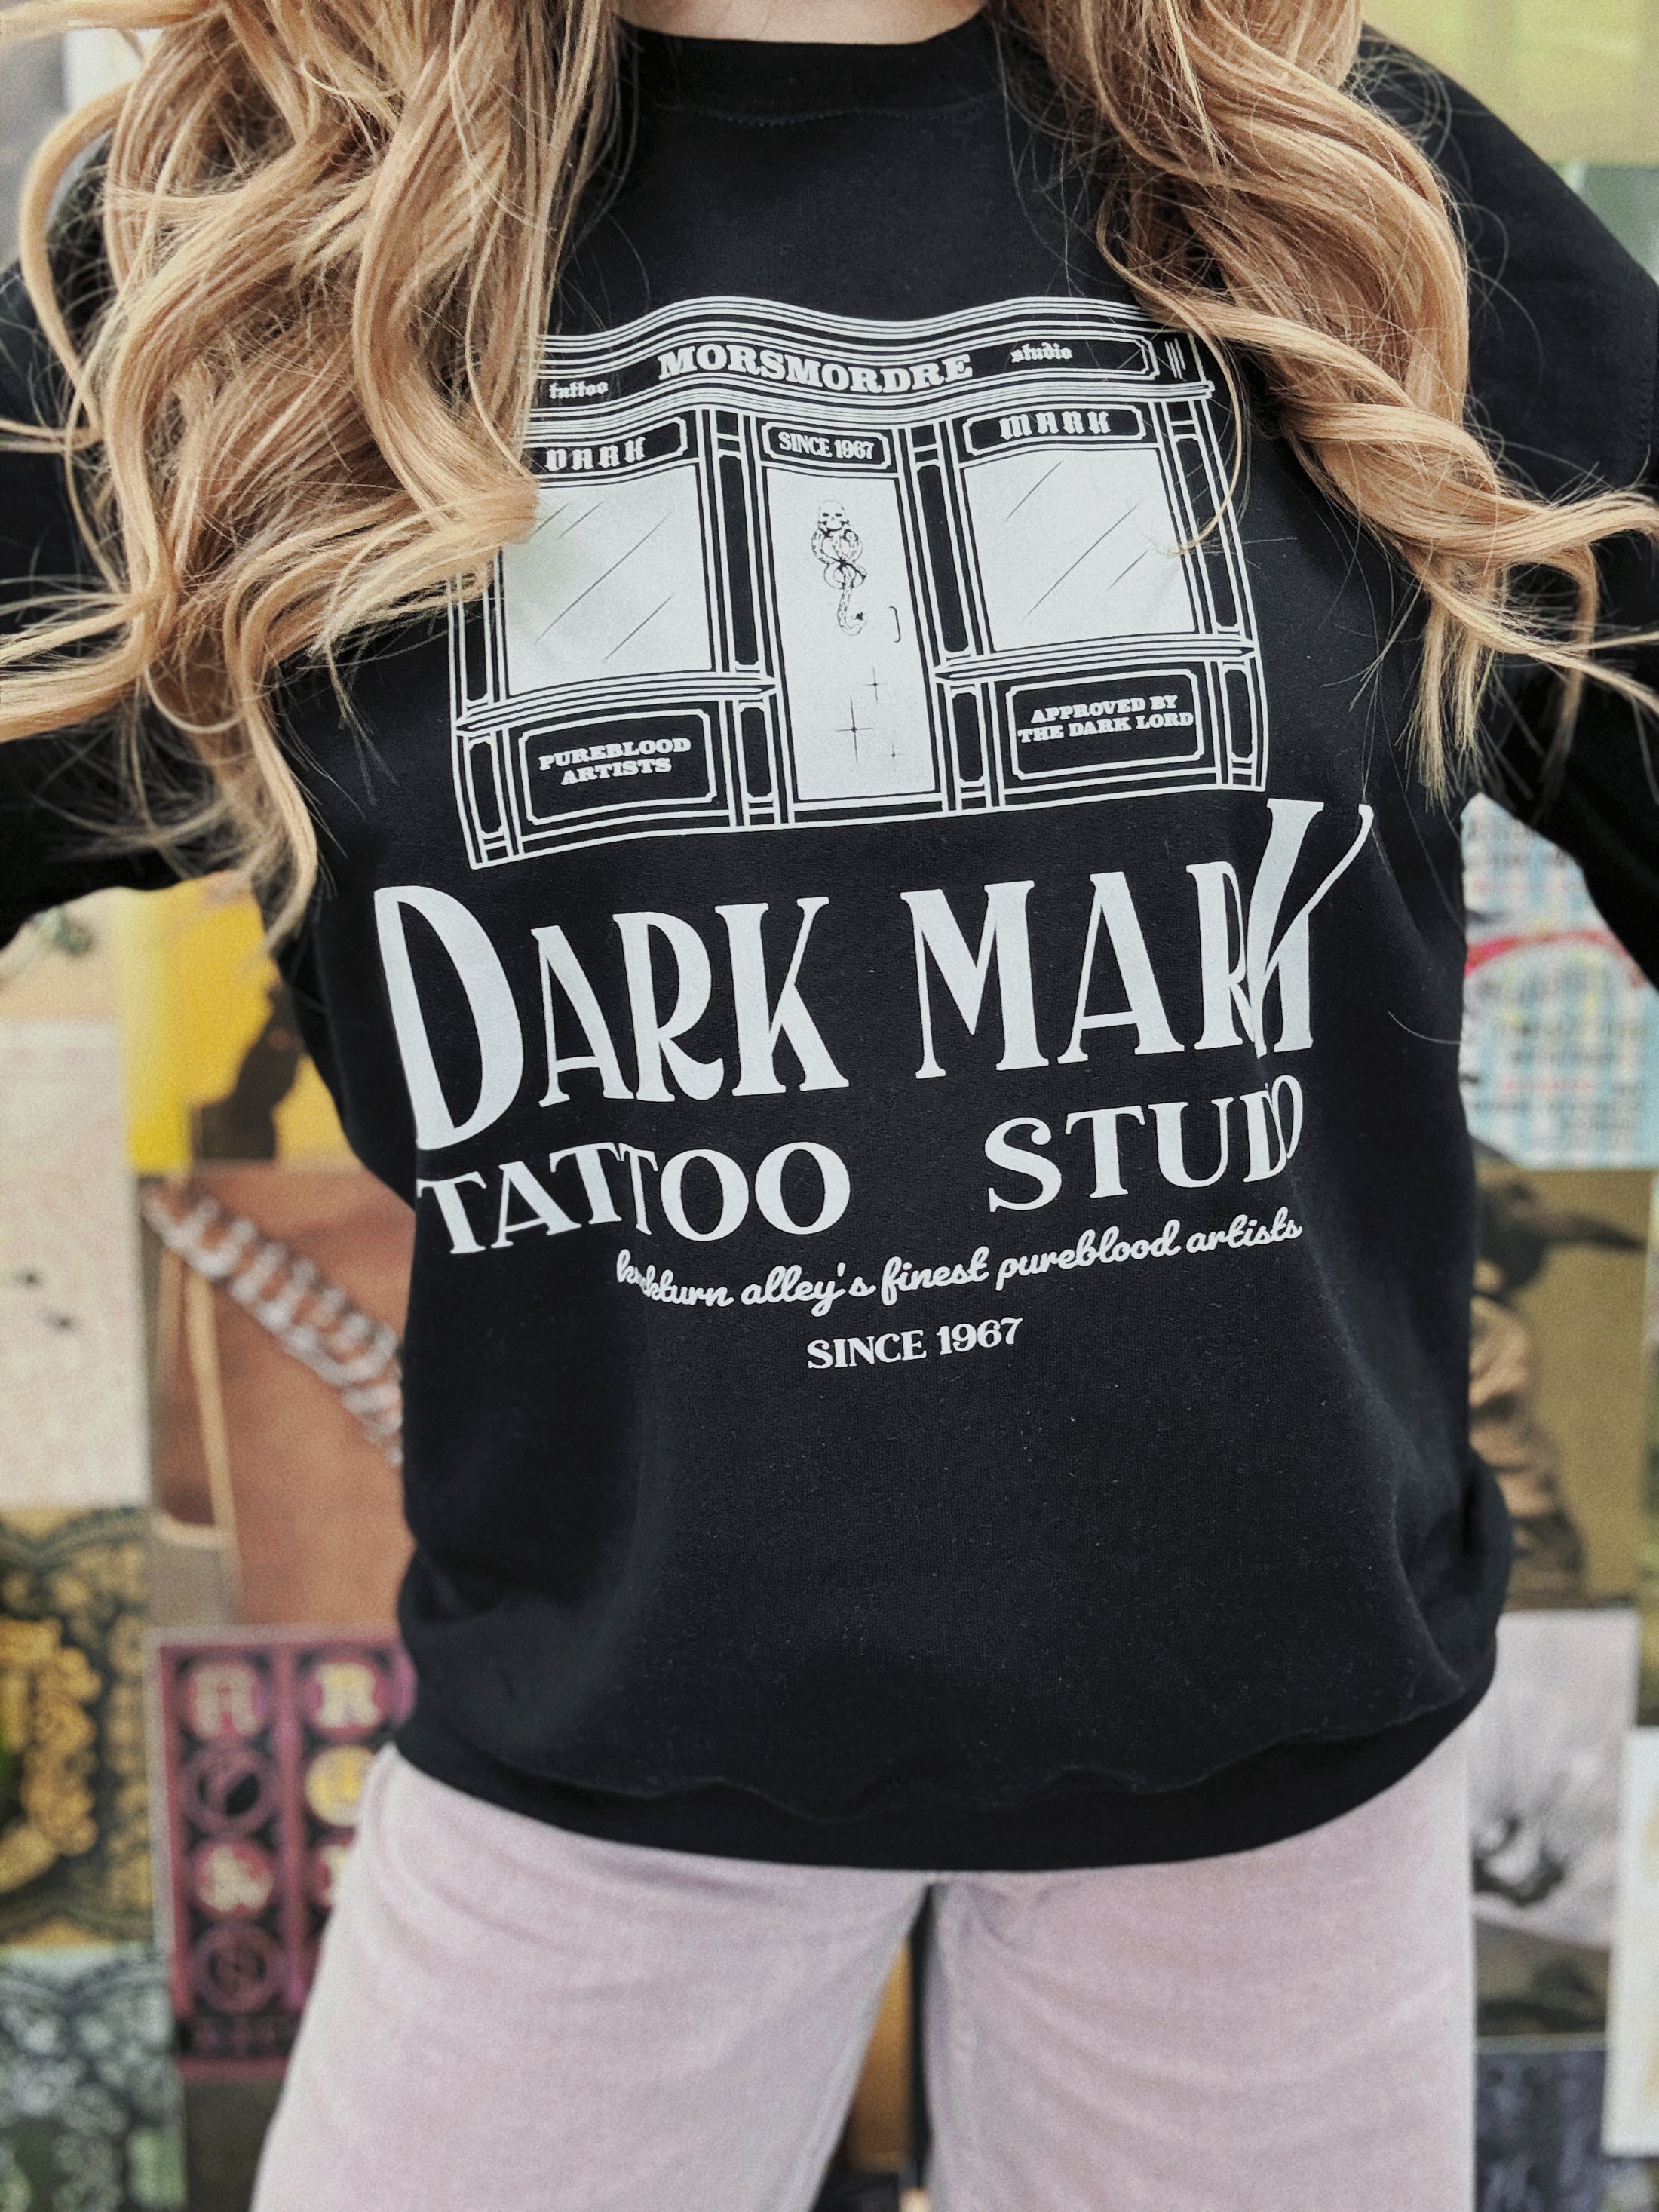 Dark Art Studio Sweatshirt